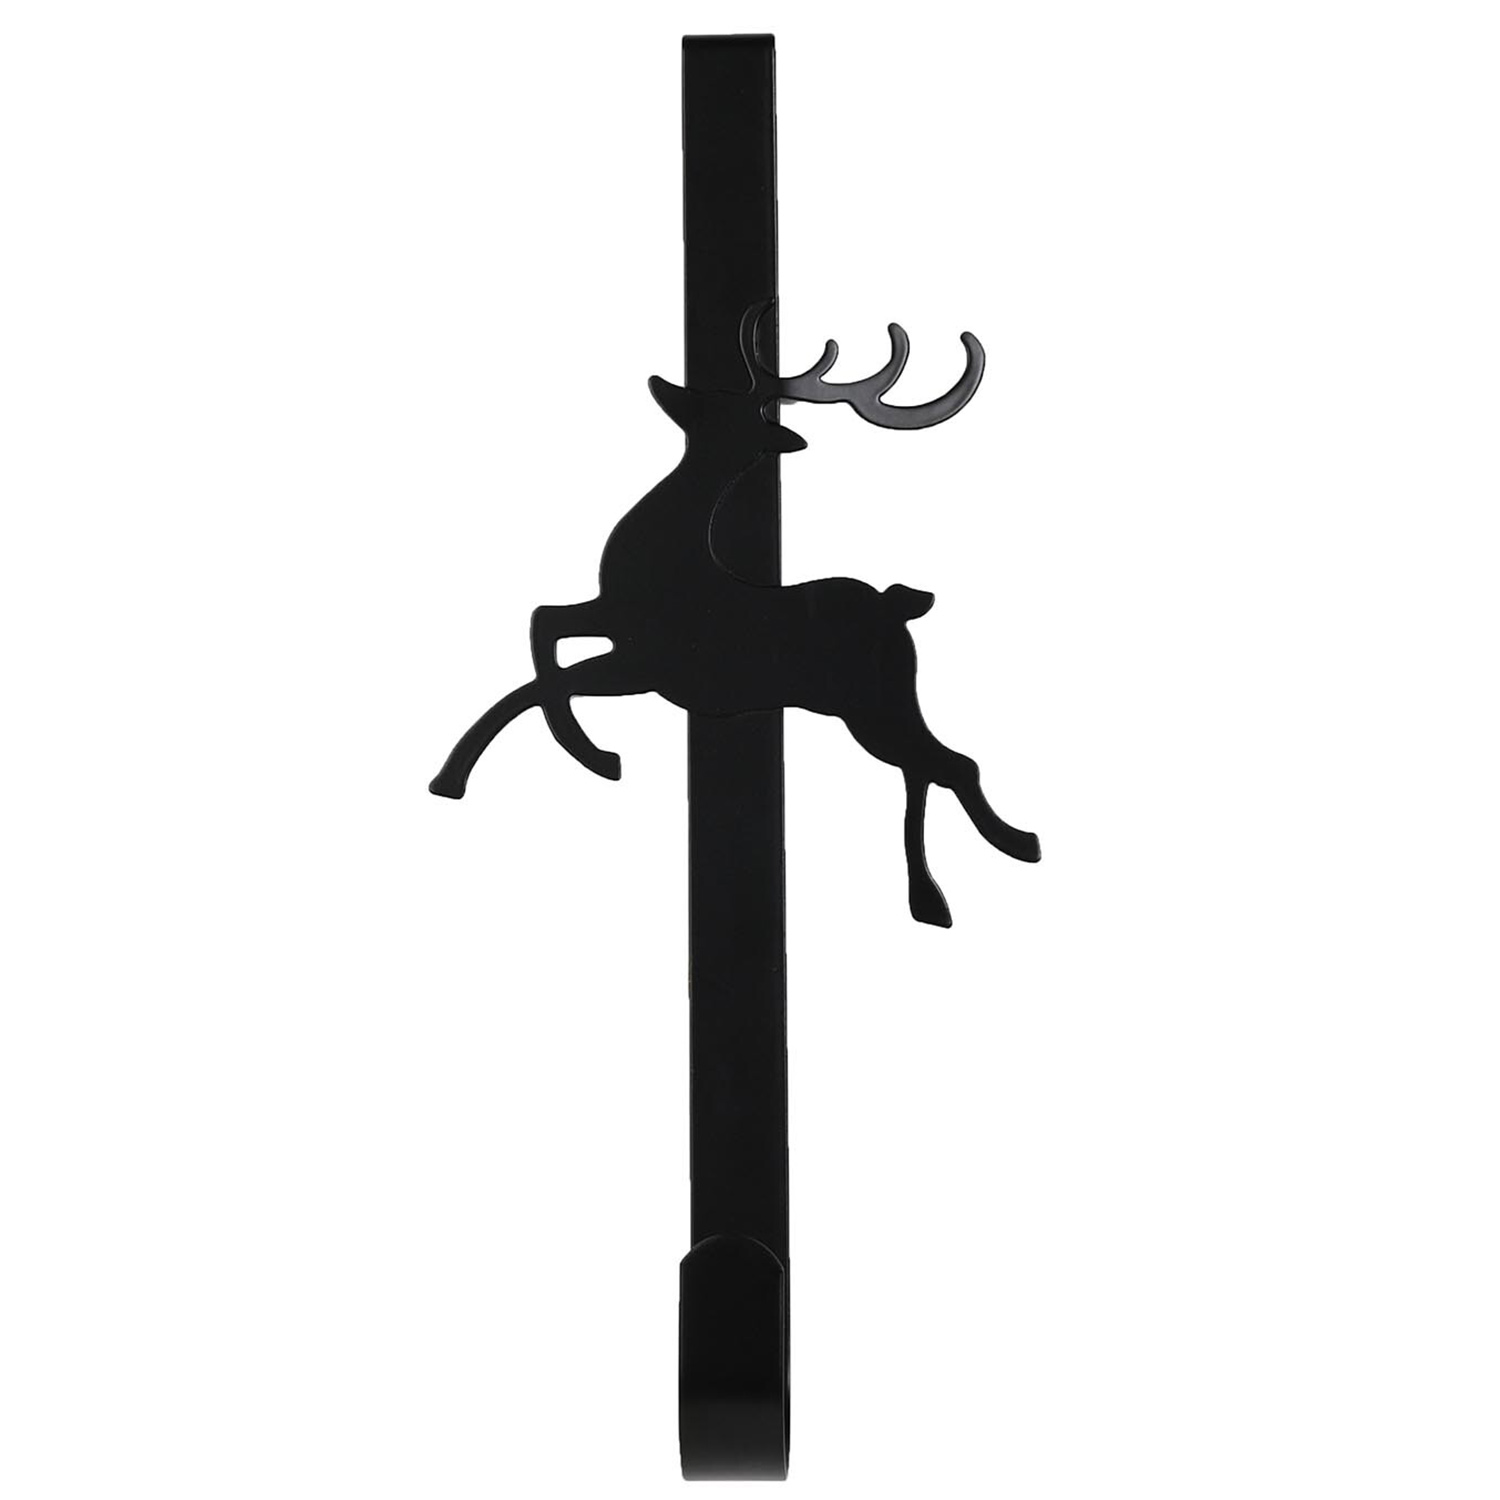 Chic Noir Black Reindeer Wreath Hanger Image 1